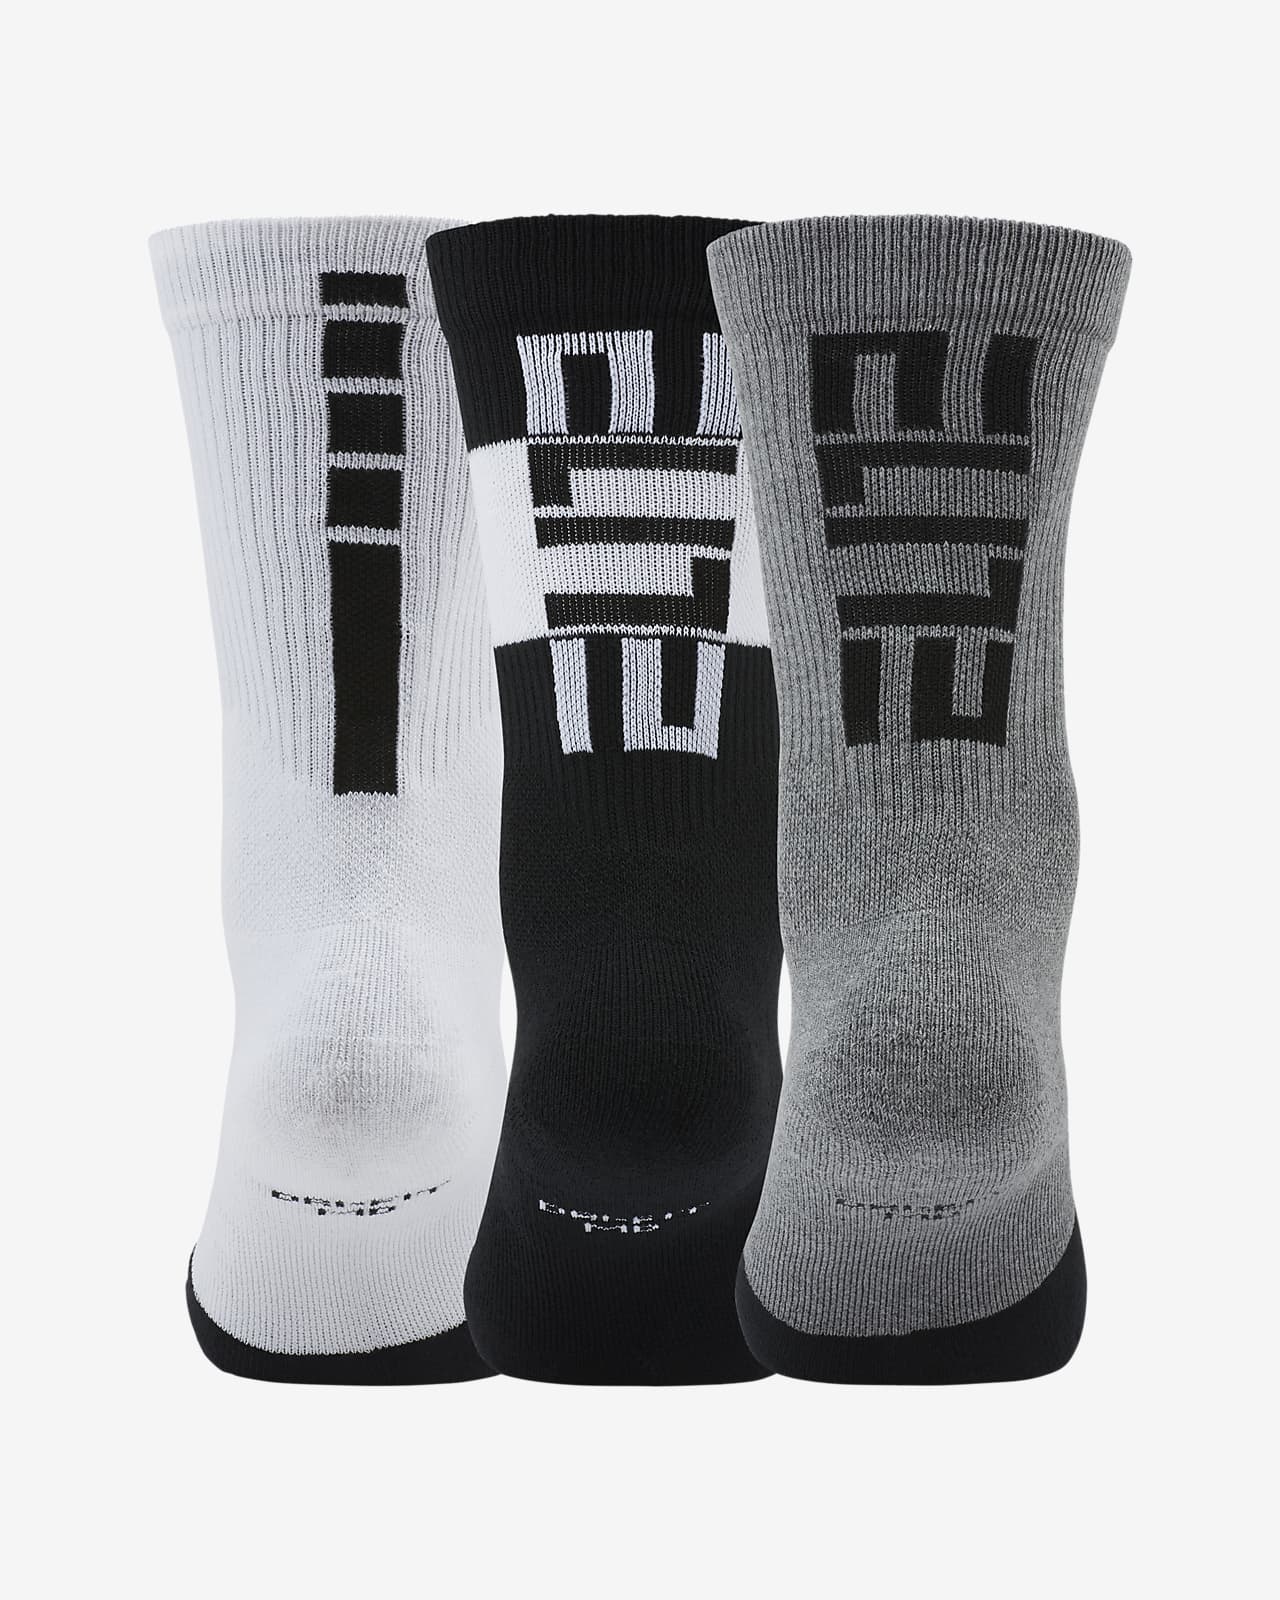 Nike Elite Versatility Mid Basketball Socks in White for Men